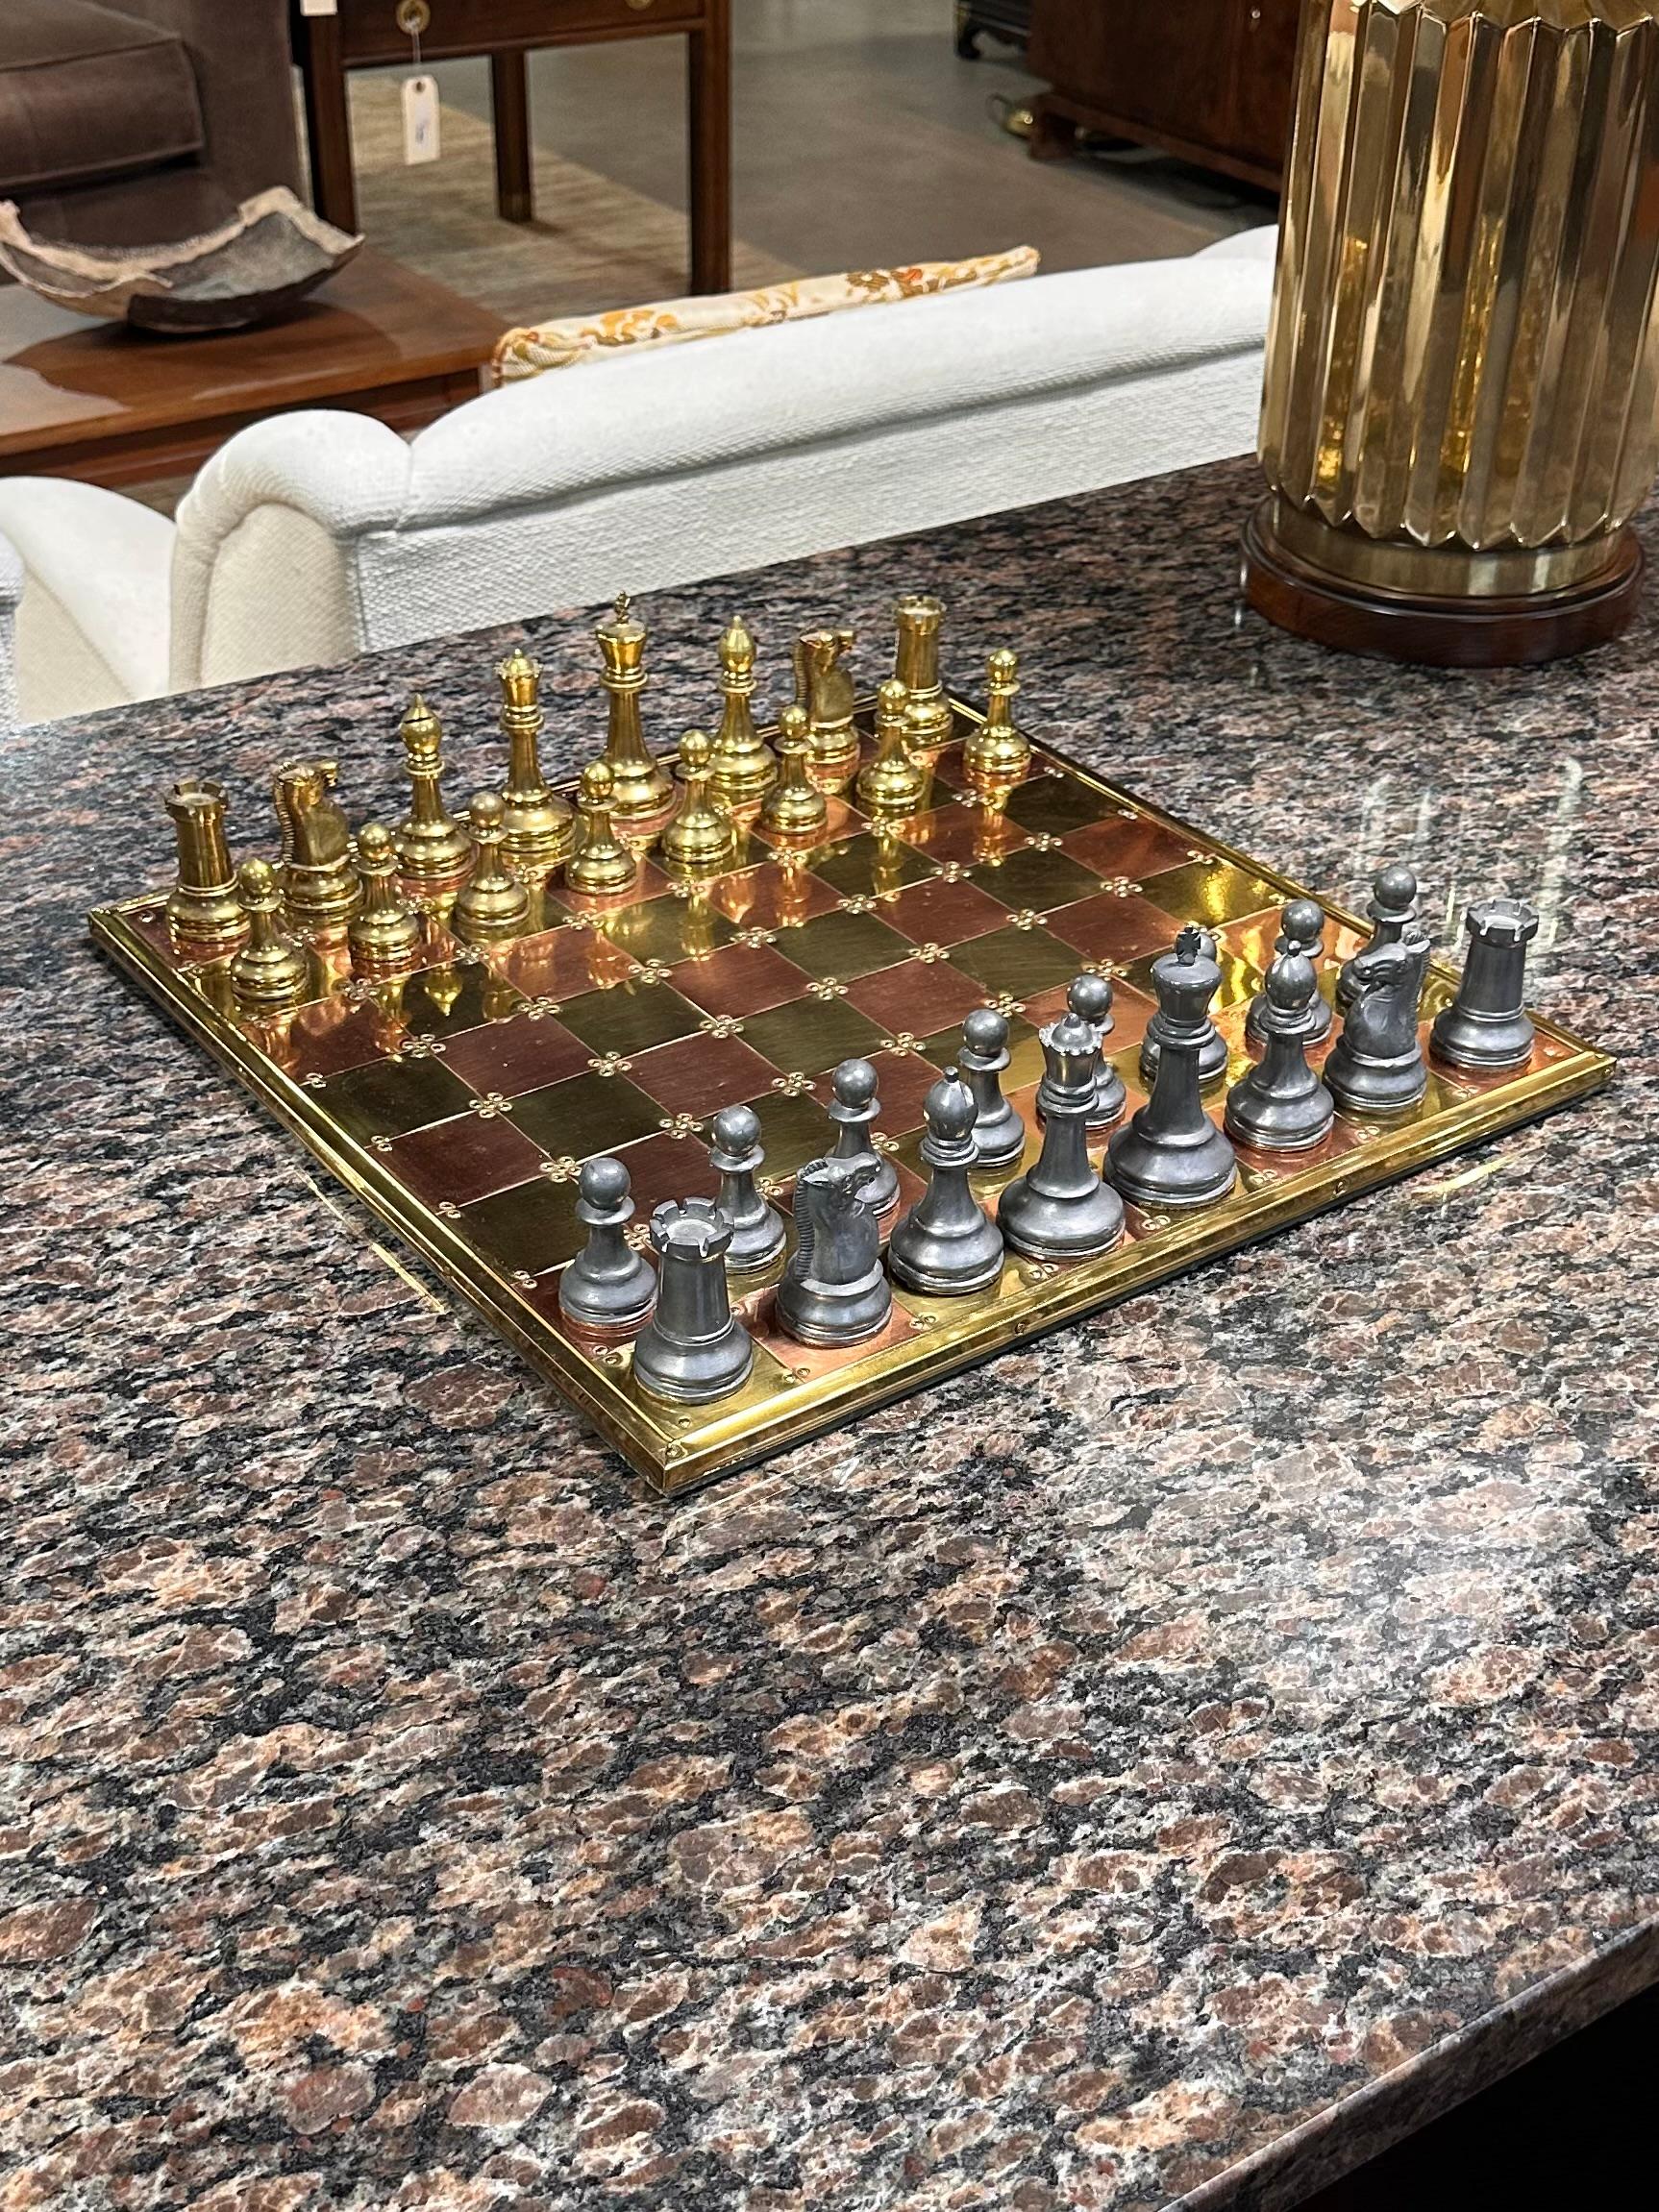 Englisches Schachspiel aus Messing, Kupfer und Zinn

Dies ist ein sehr schönes englisches Spielset aus Messing, Kupfer und Zinn aus dem späten 20. Jahrhundert, ca. 1980. Das Schachbrett besteht aus 64 schimmernden Quadraten aus Kupfer und Messing.